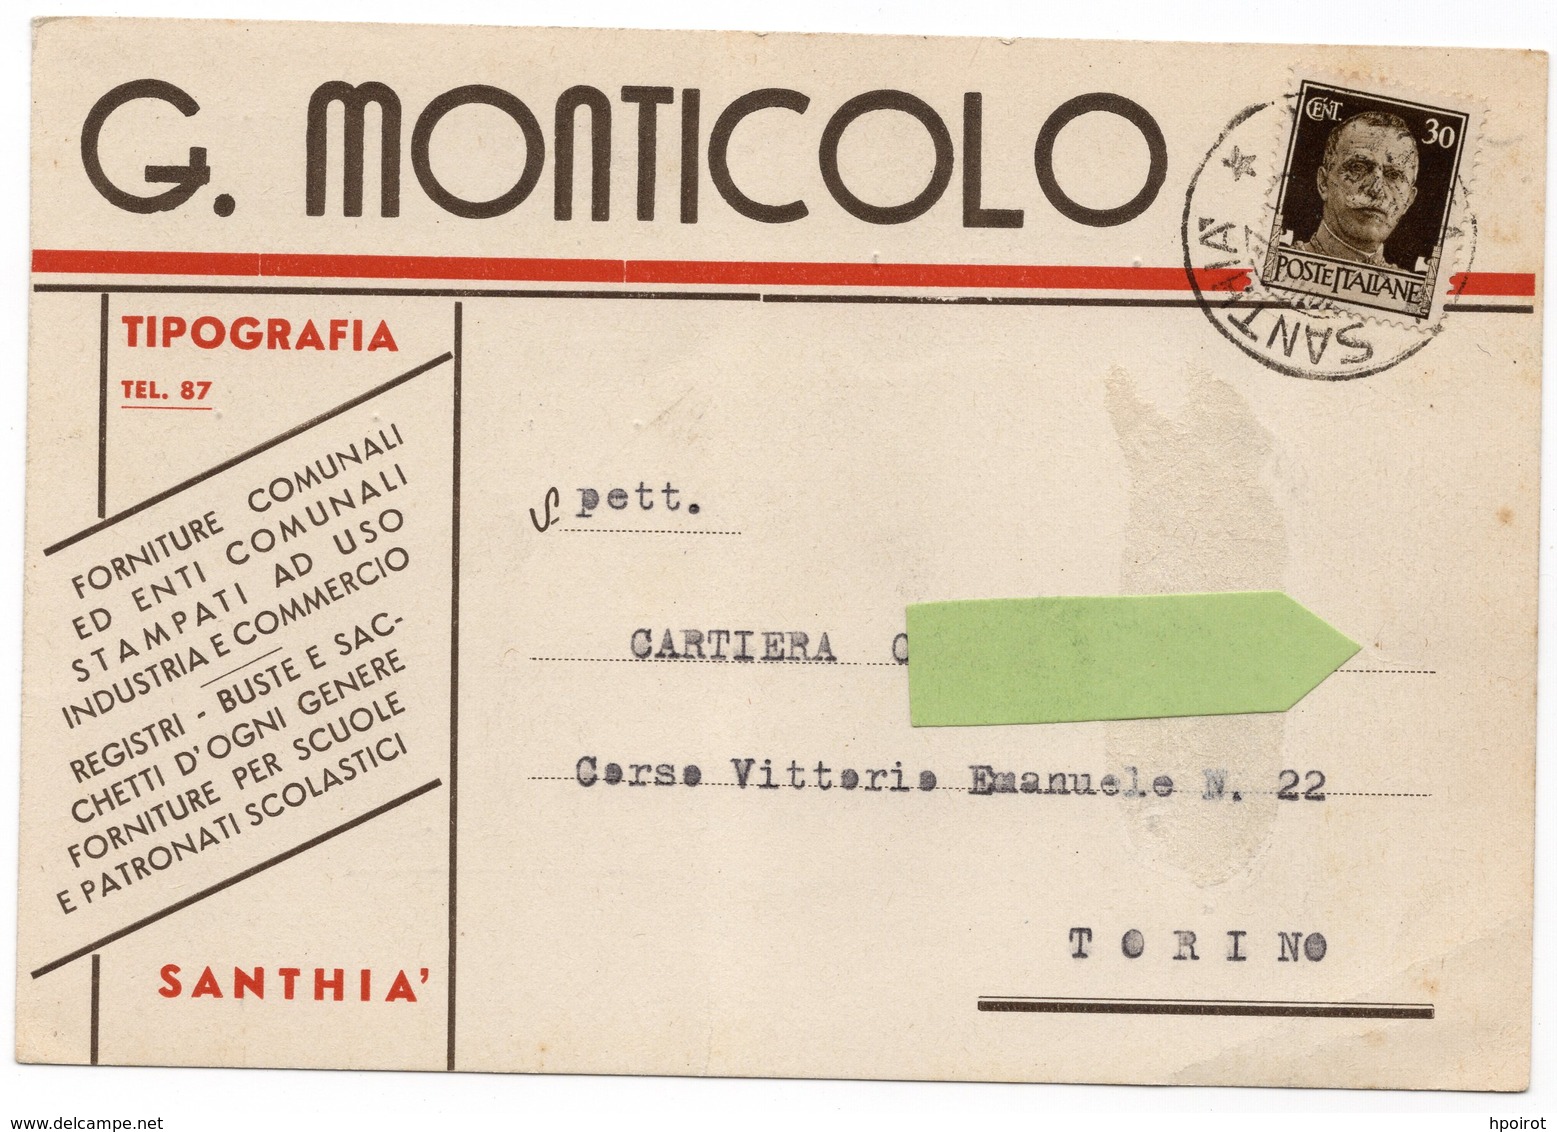 SANTHIA' - CARTOLINA COMMERCIALE TIPOGRAFIA G. MONTICOLO - FORMATO GRANDE NON LUCIDA - VIAGGIATA 1940 - (rif. A09) - Vercelli